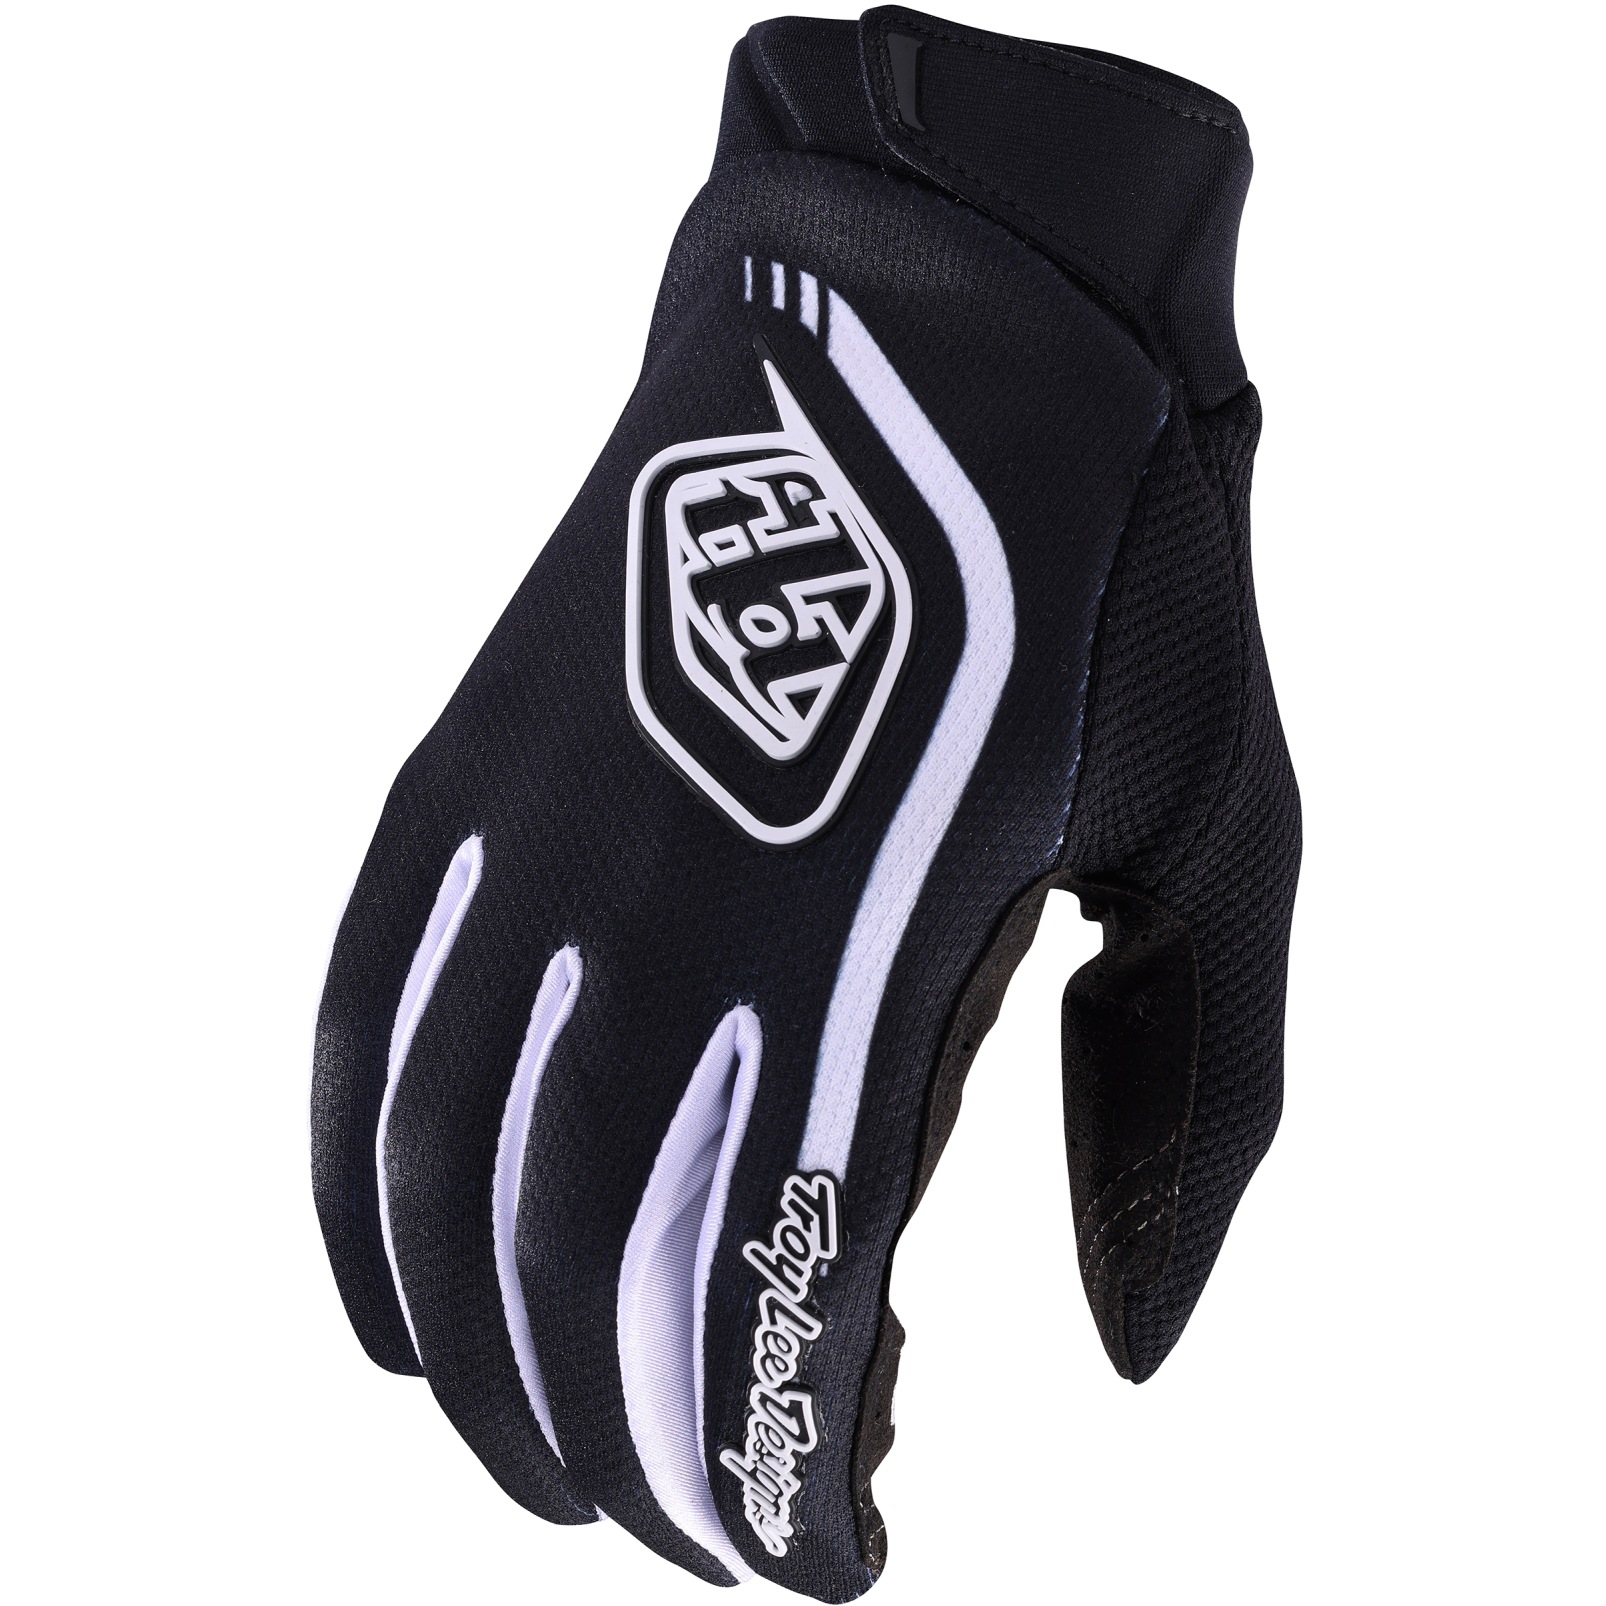 Productfoto van Troy Lee Designs GP Pro Handschoenen - Solid Black